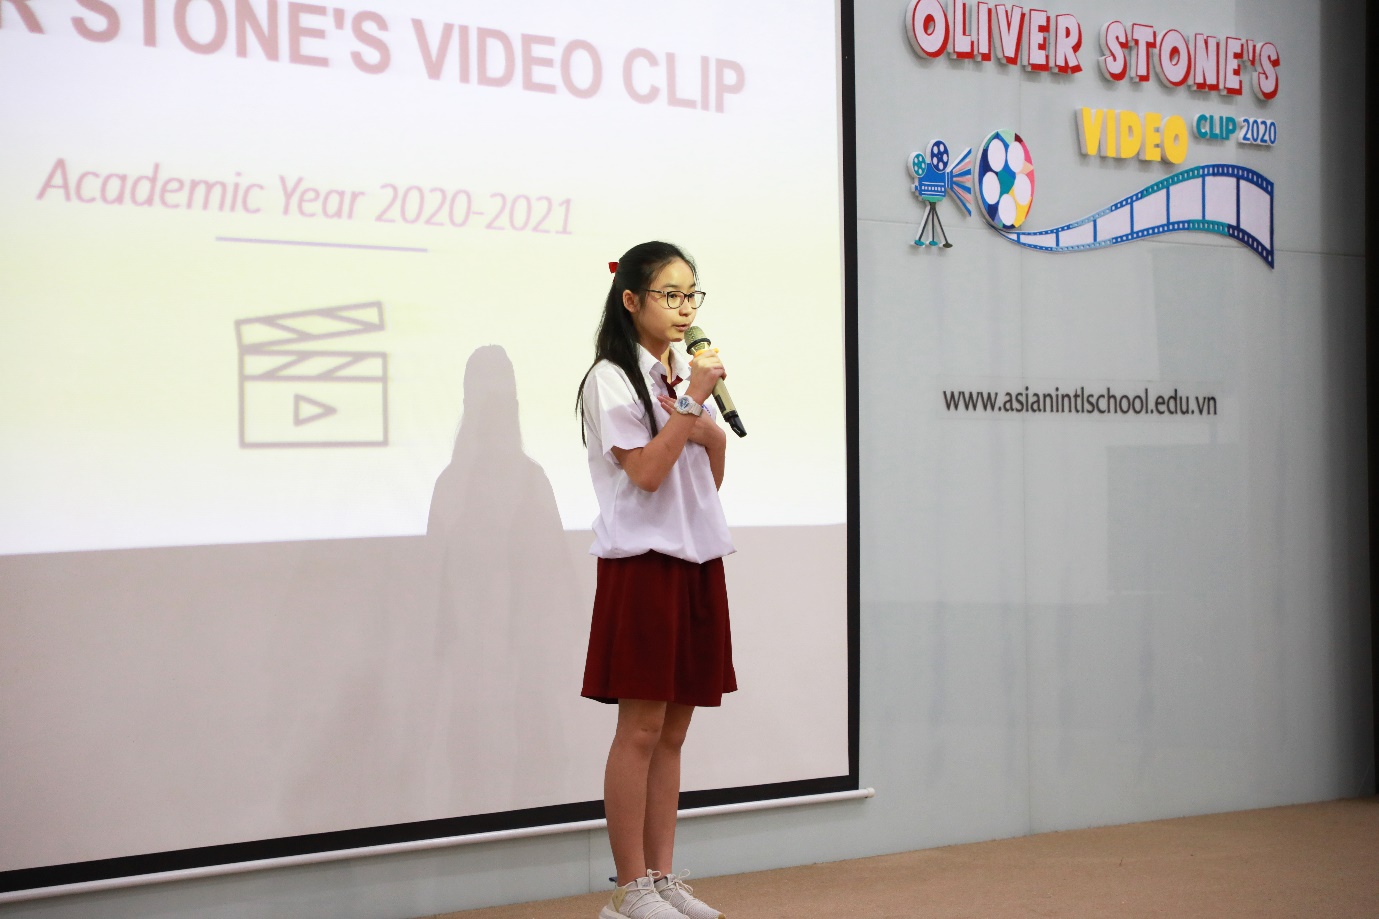 Video clip chủ đề Cyberbullying giành giải nhất tại Oliver Stone’s Video Clip năm học 2020 - 2021